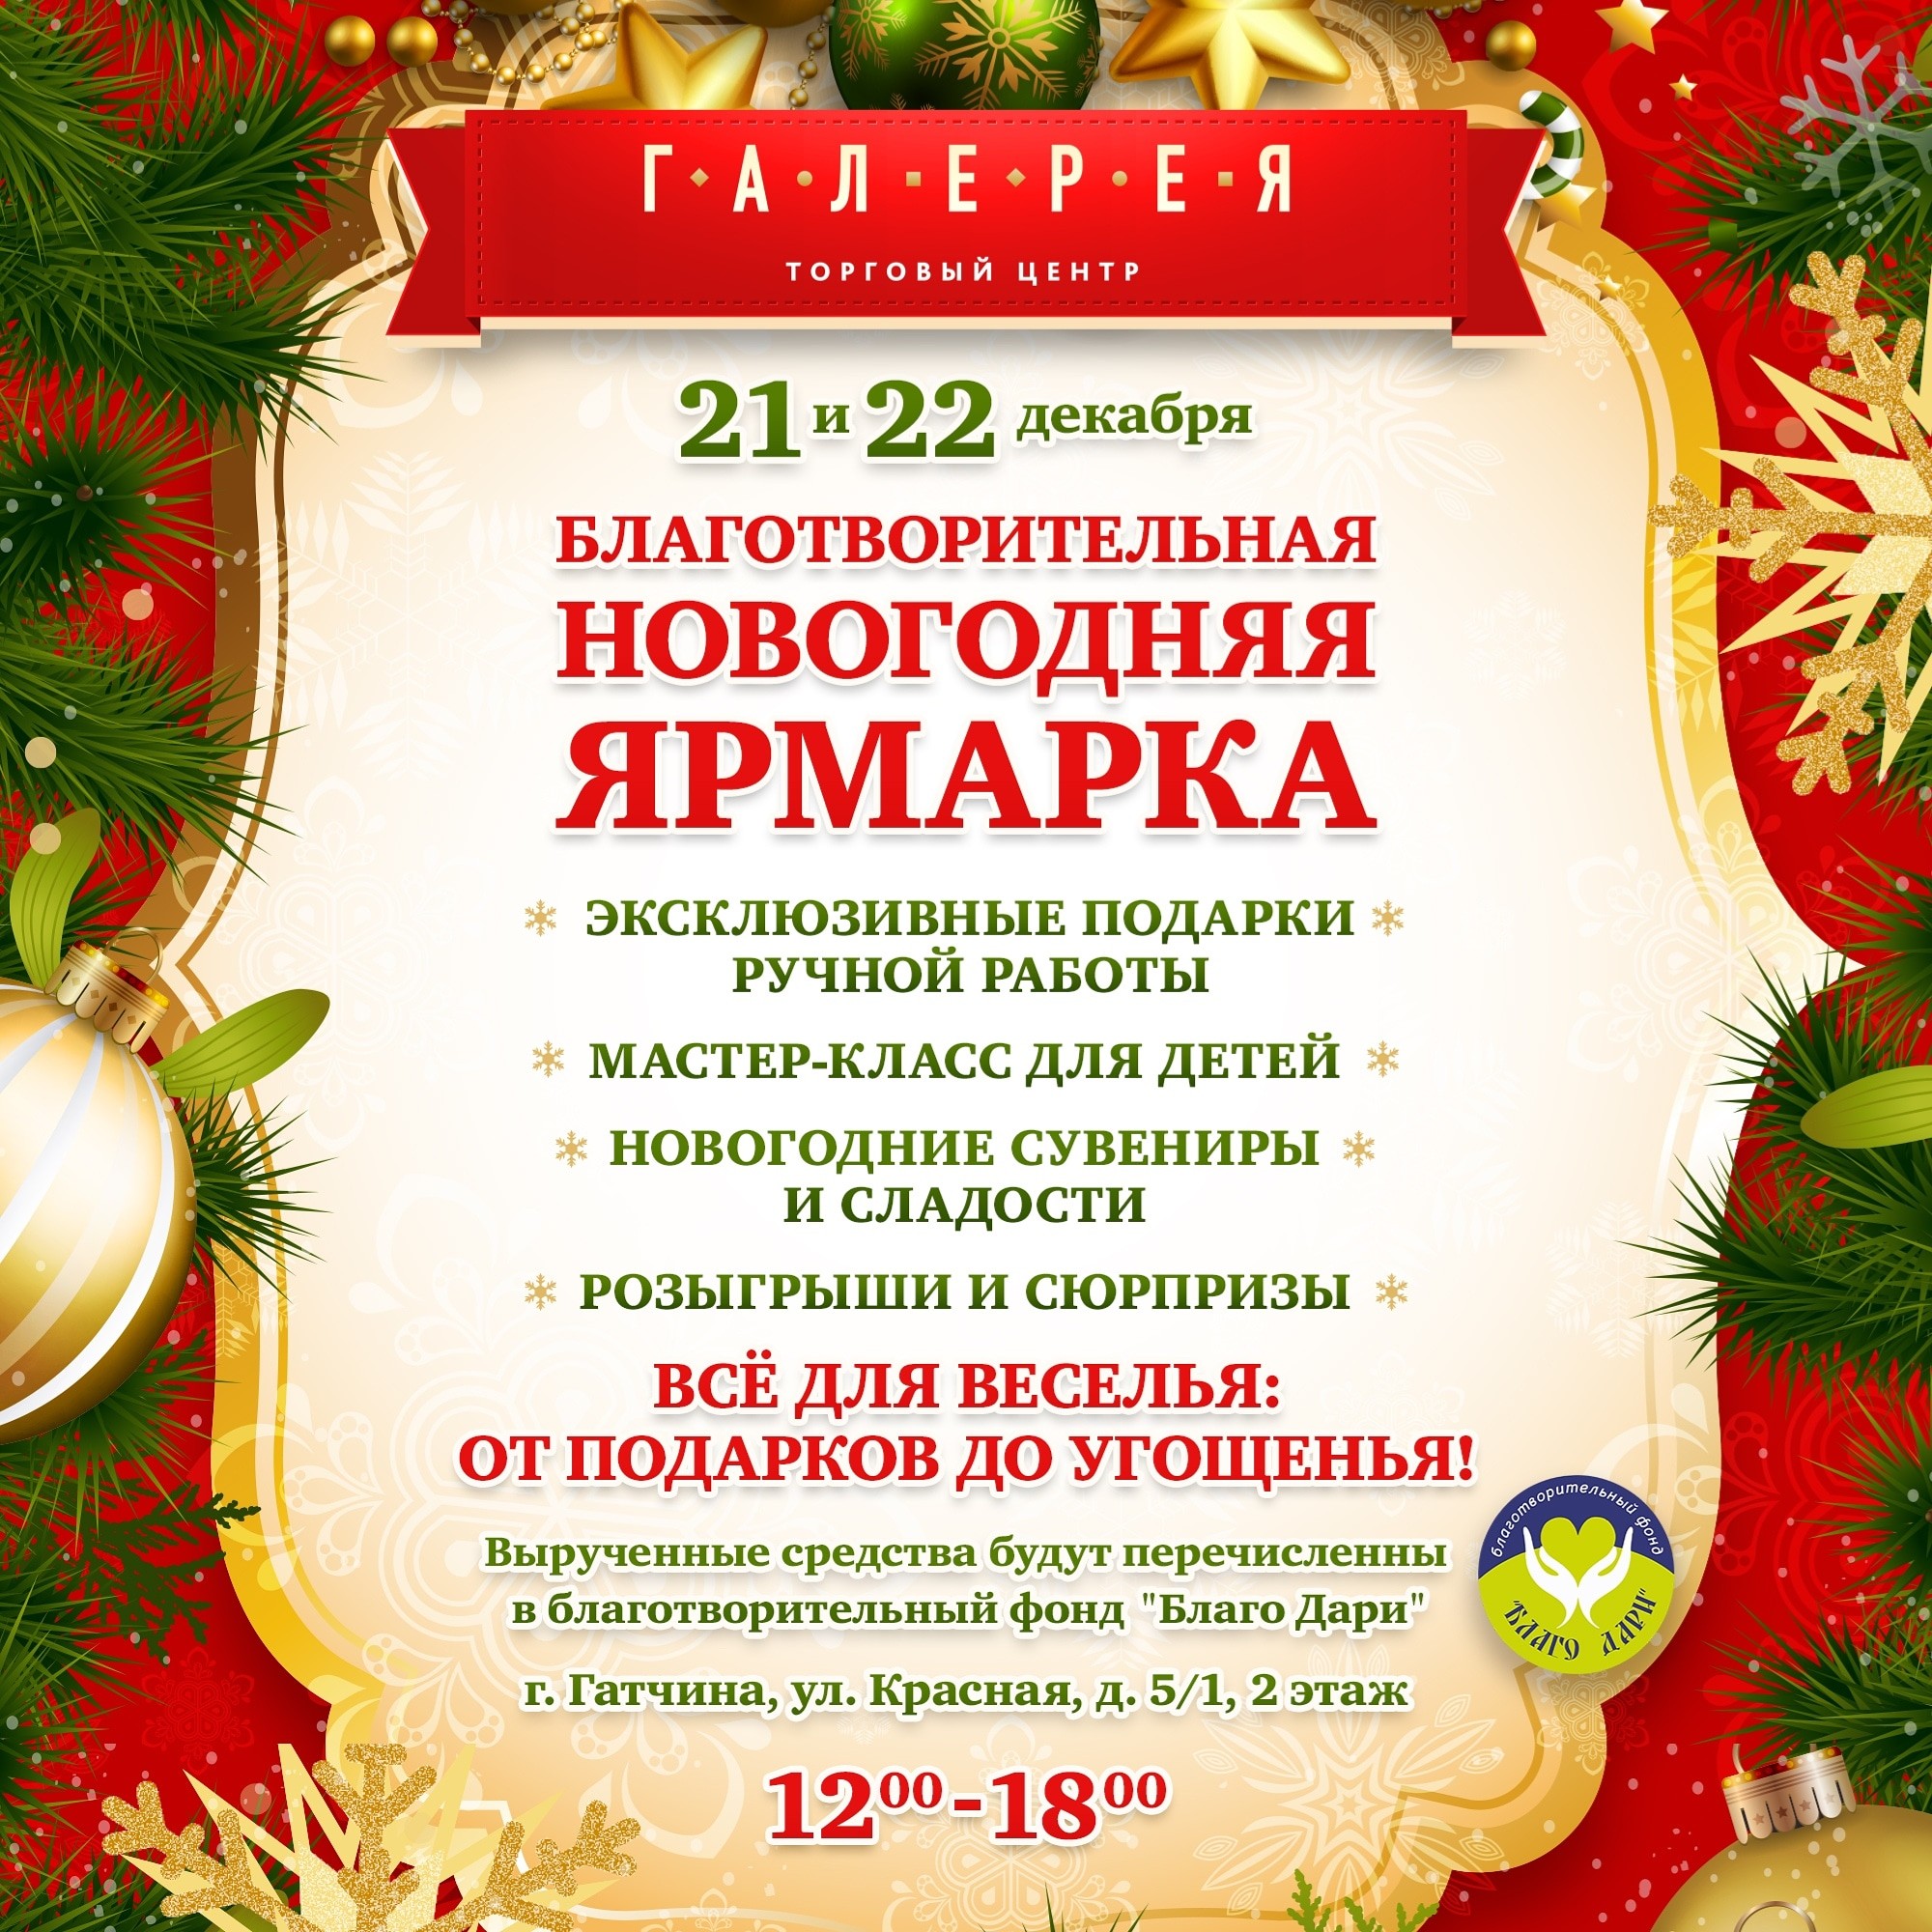 ТЦ "Галерея" и благотворительный фонд "Благо Дари" приглашают на II Новогоднюю ярмарку! 